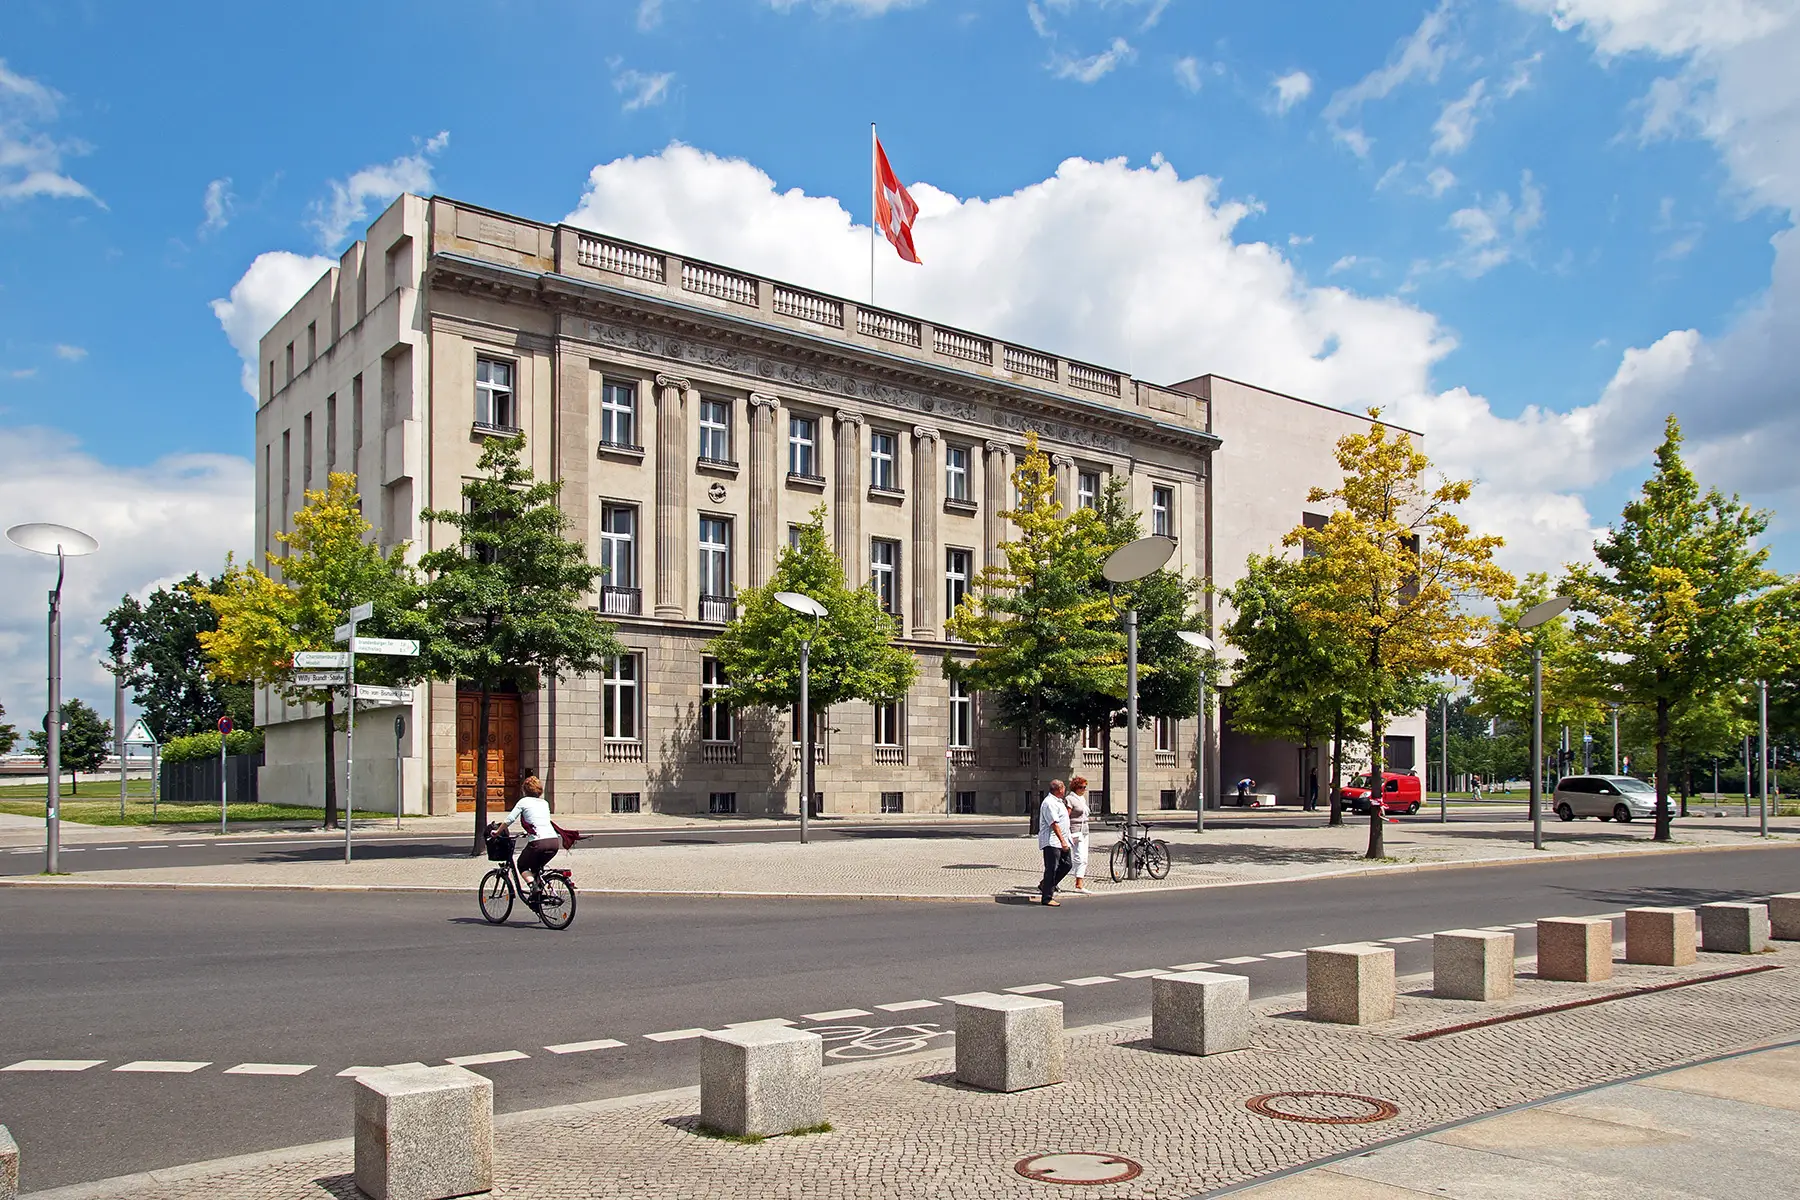 The Swiss Embassy in Berlin, Germany